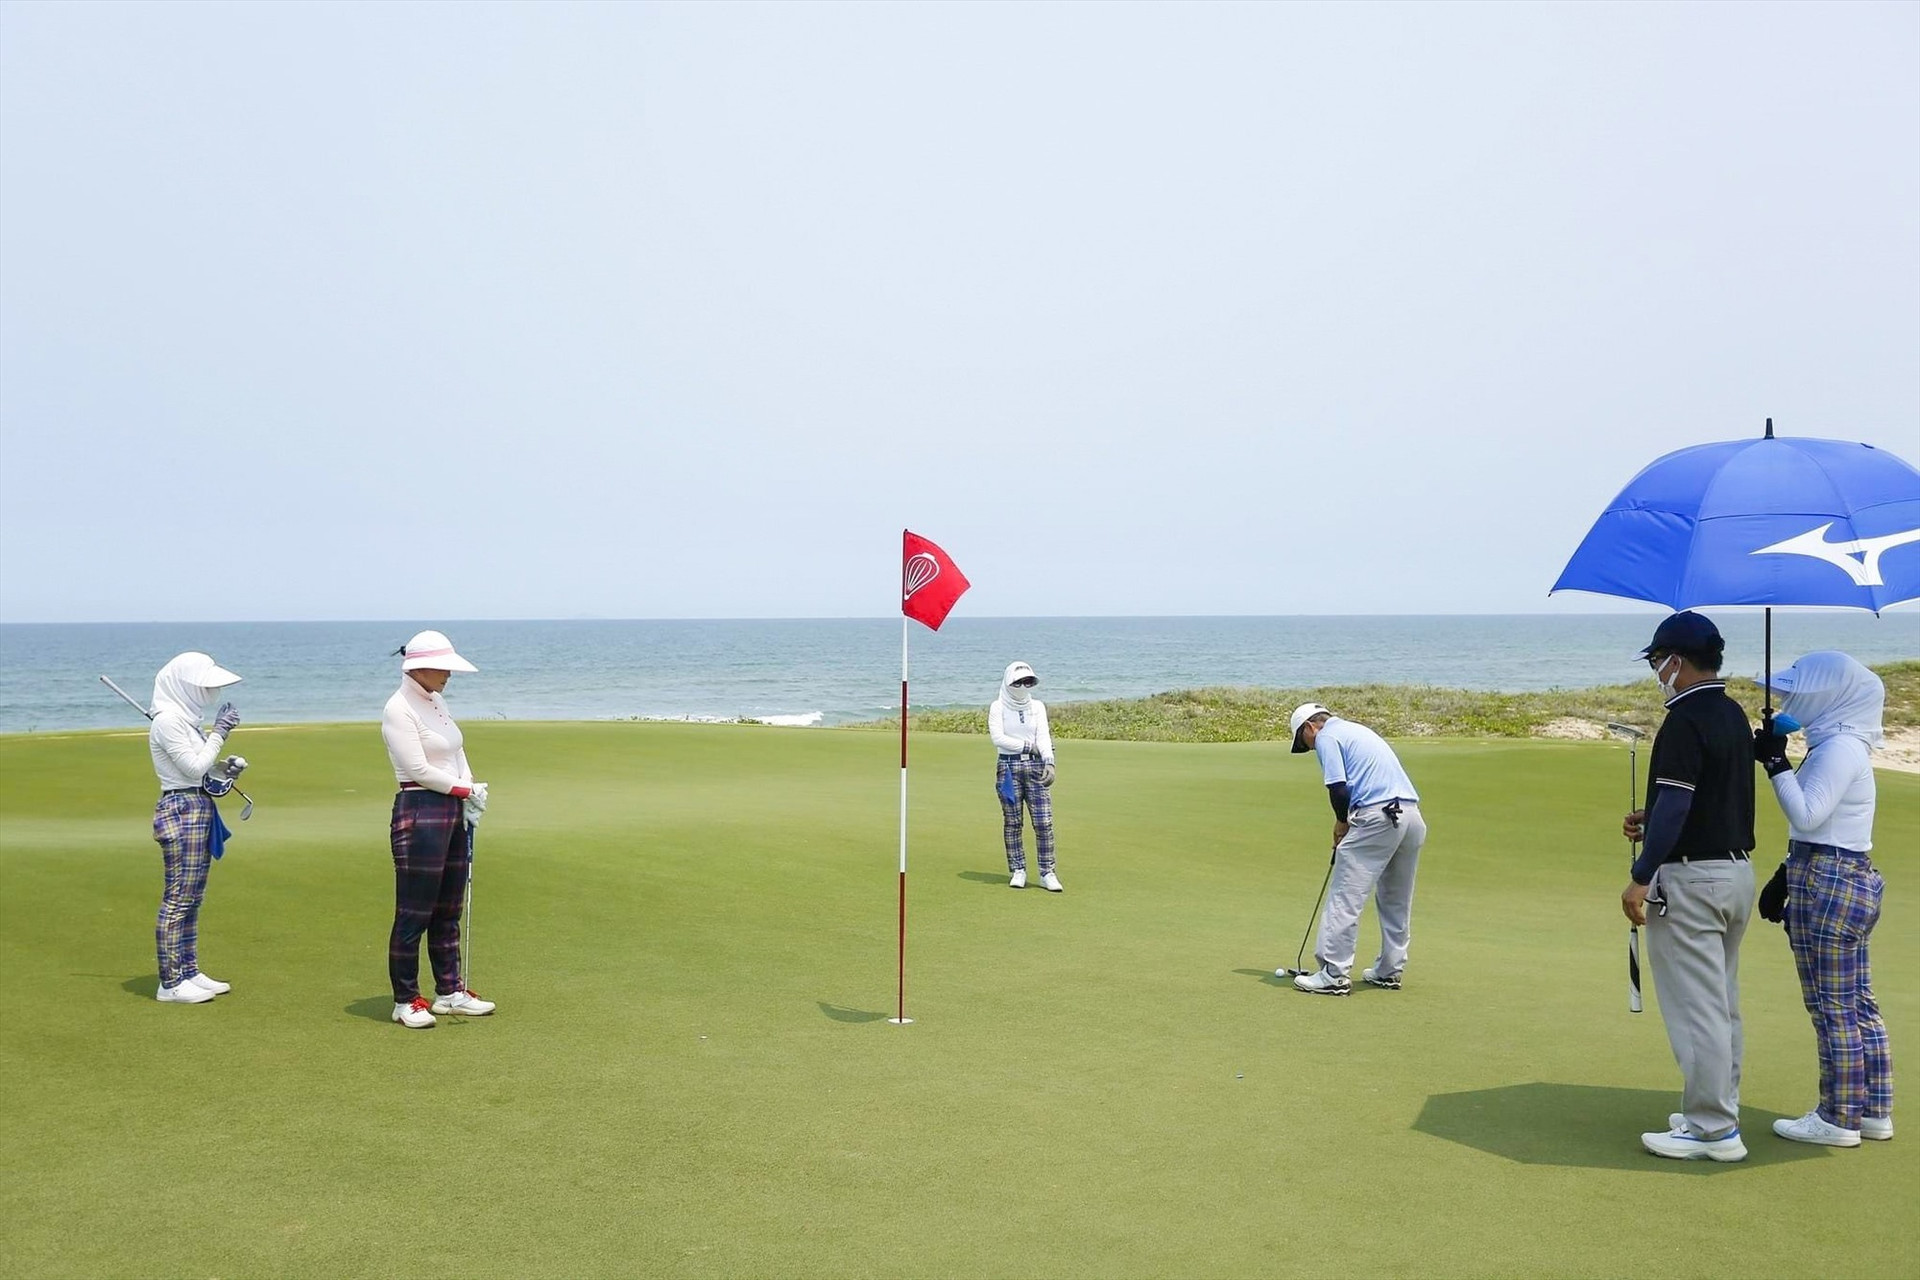 Quảng Nam và khu vực miền Trung – Tây Nguyên được các chuyên gia đánh giá phù hợp để phát triển du lịch golf.